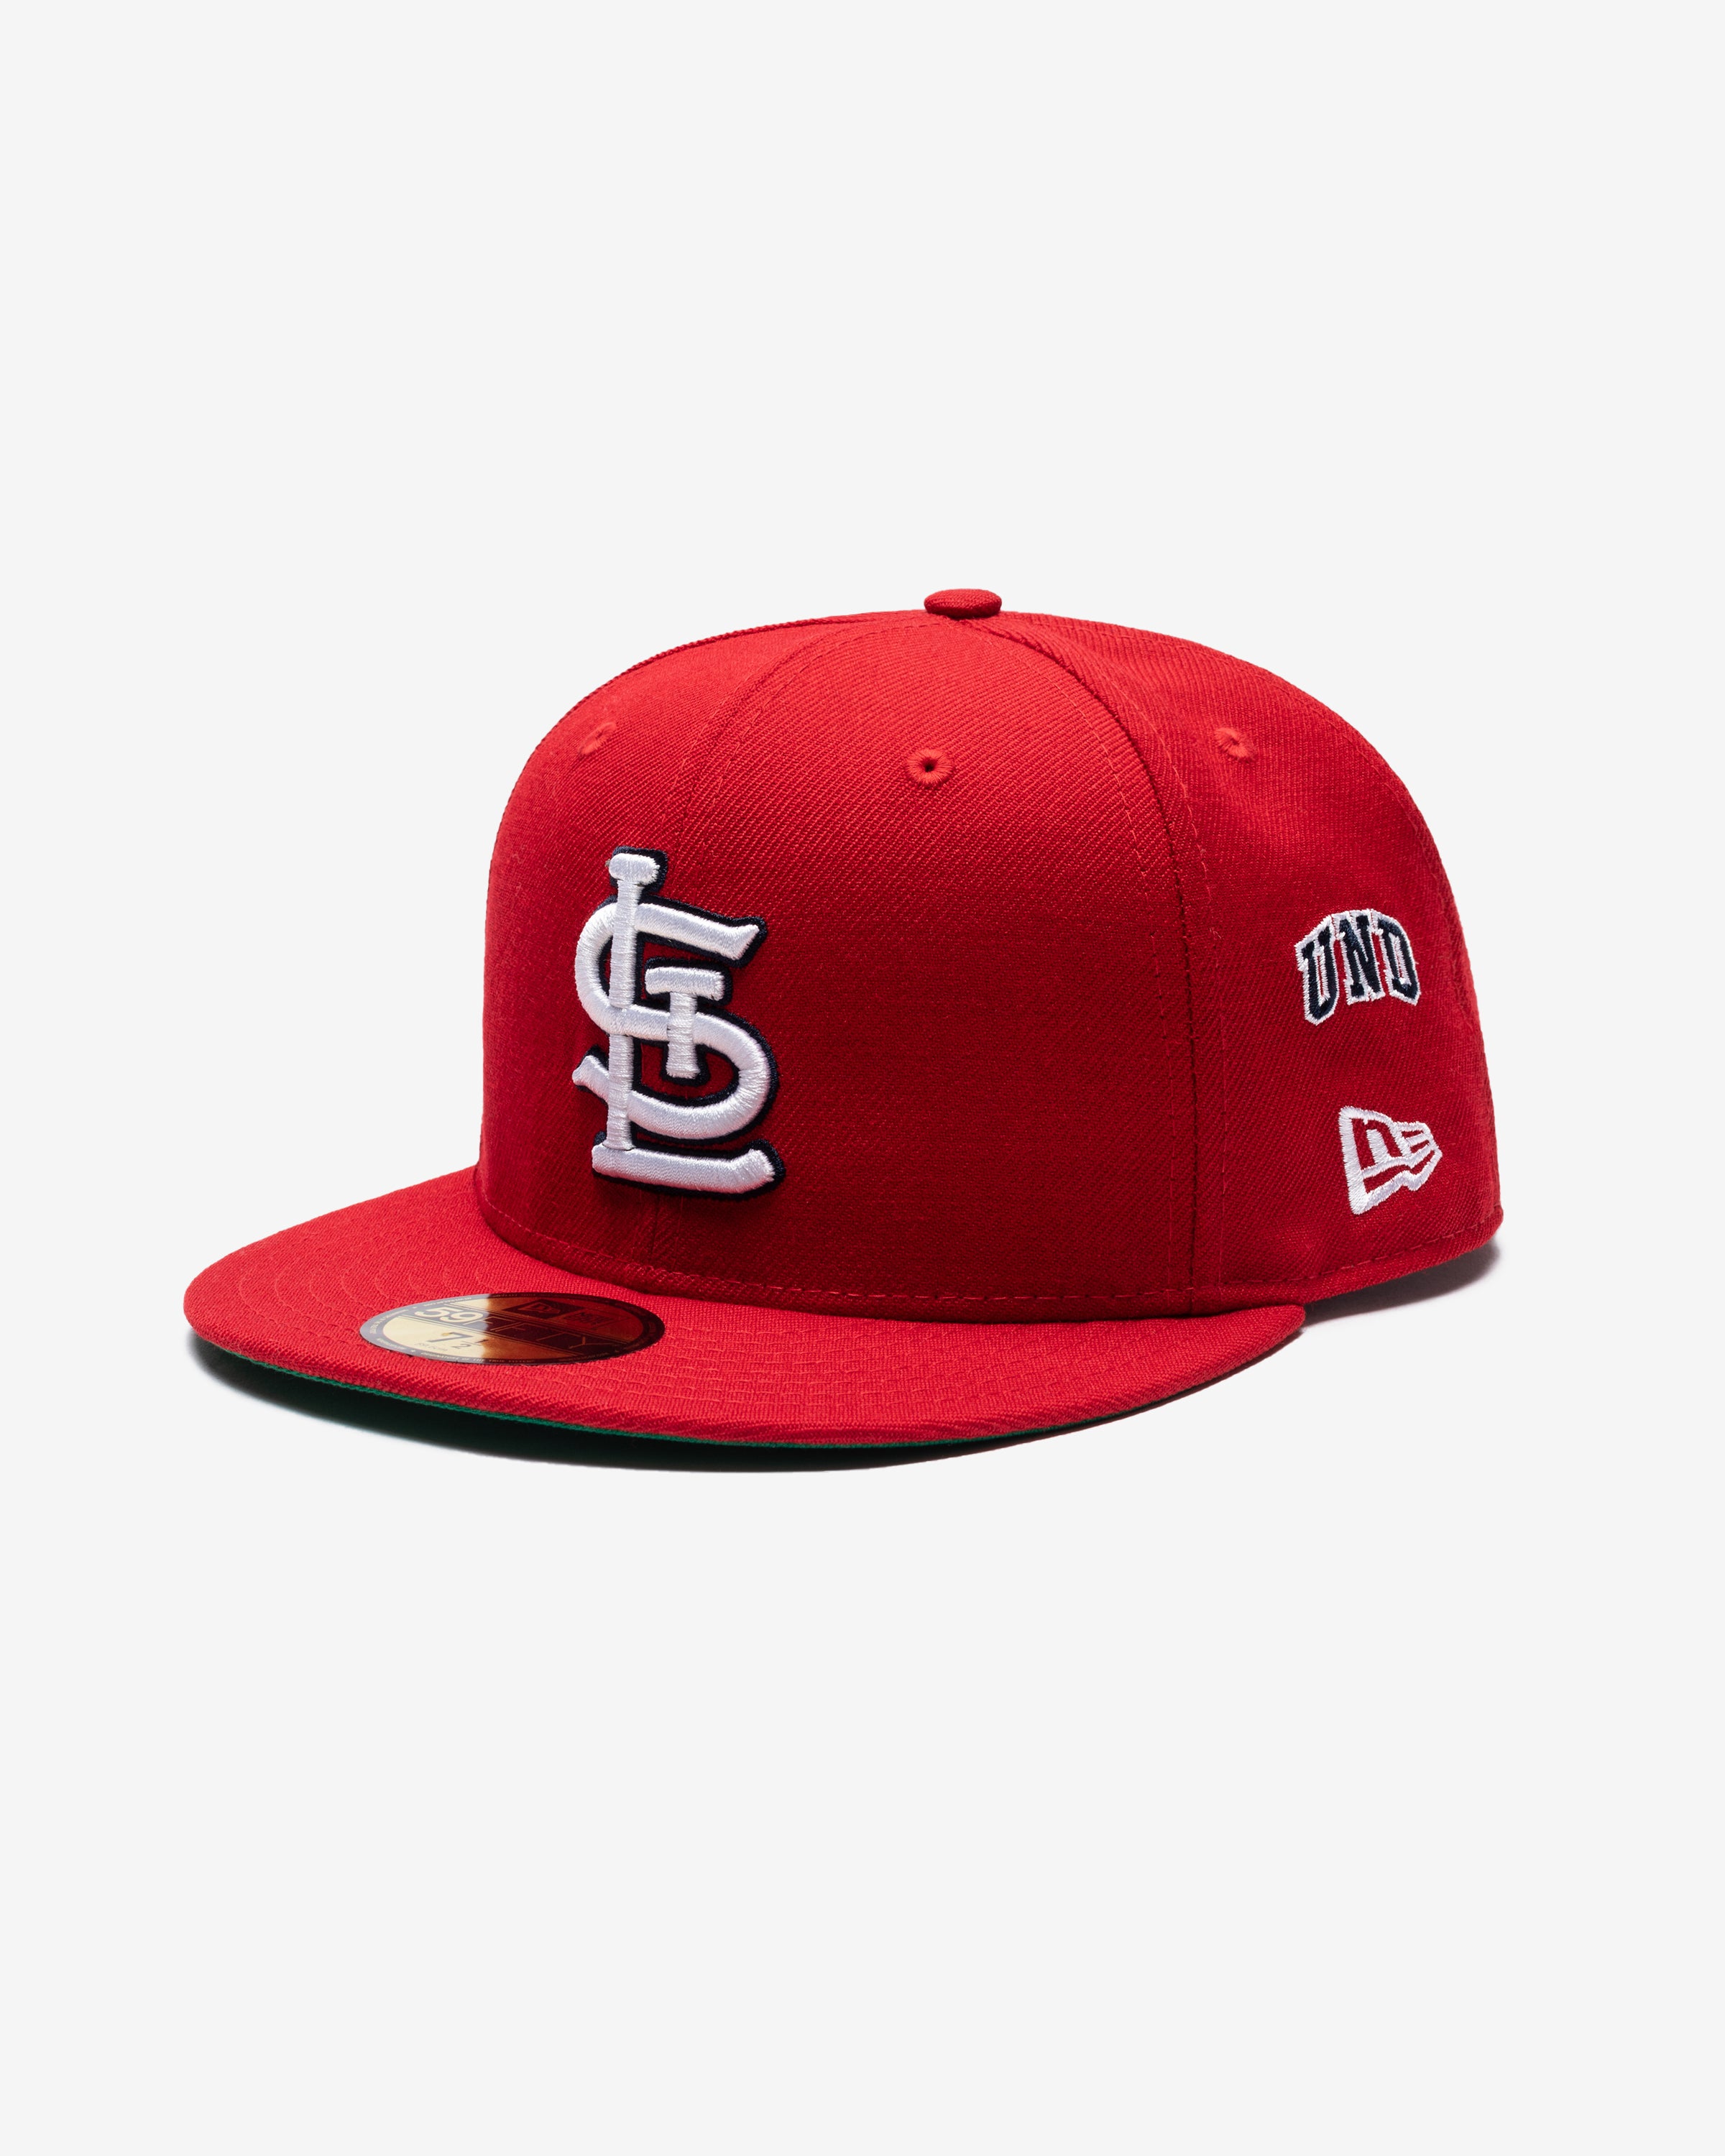 St. Louis Cardinals (@Cardinals) / X